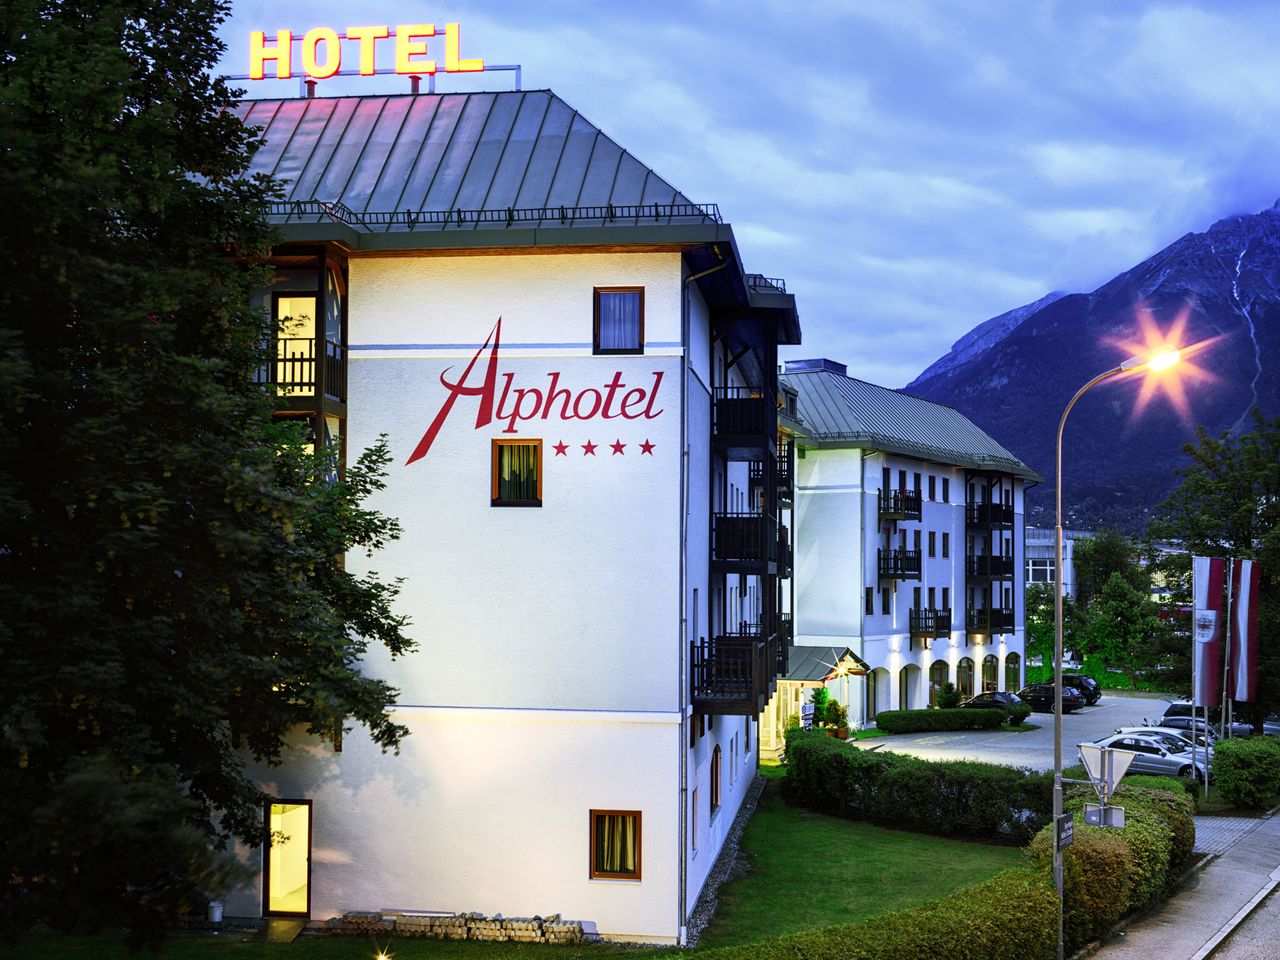 5 Tage im Alphotel Innsbruck mit Frühstück